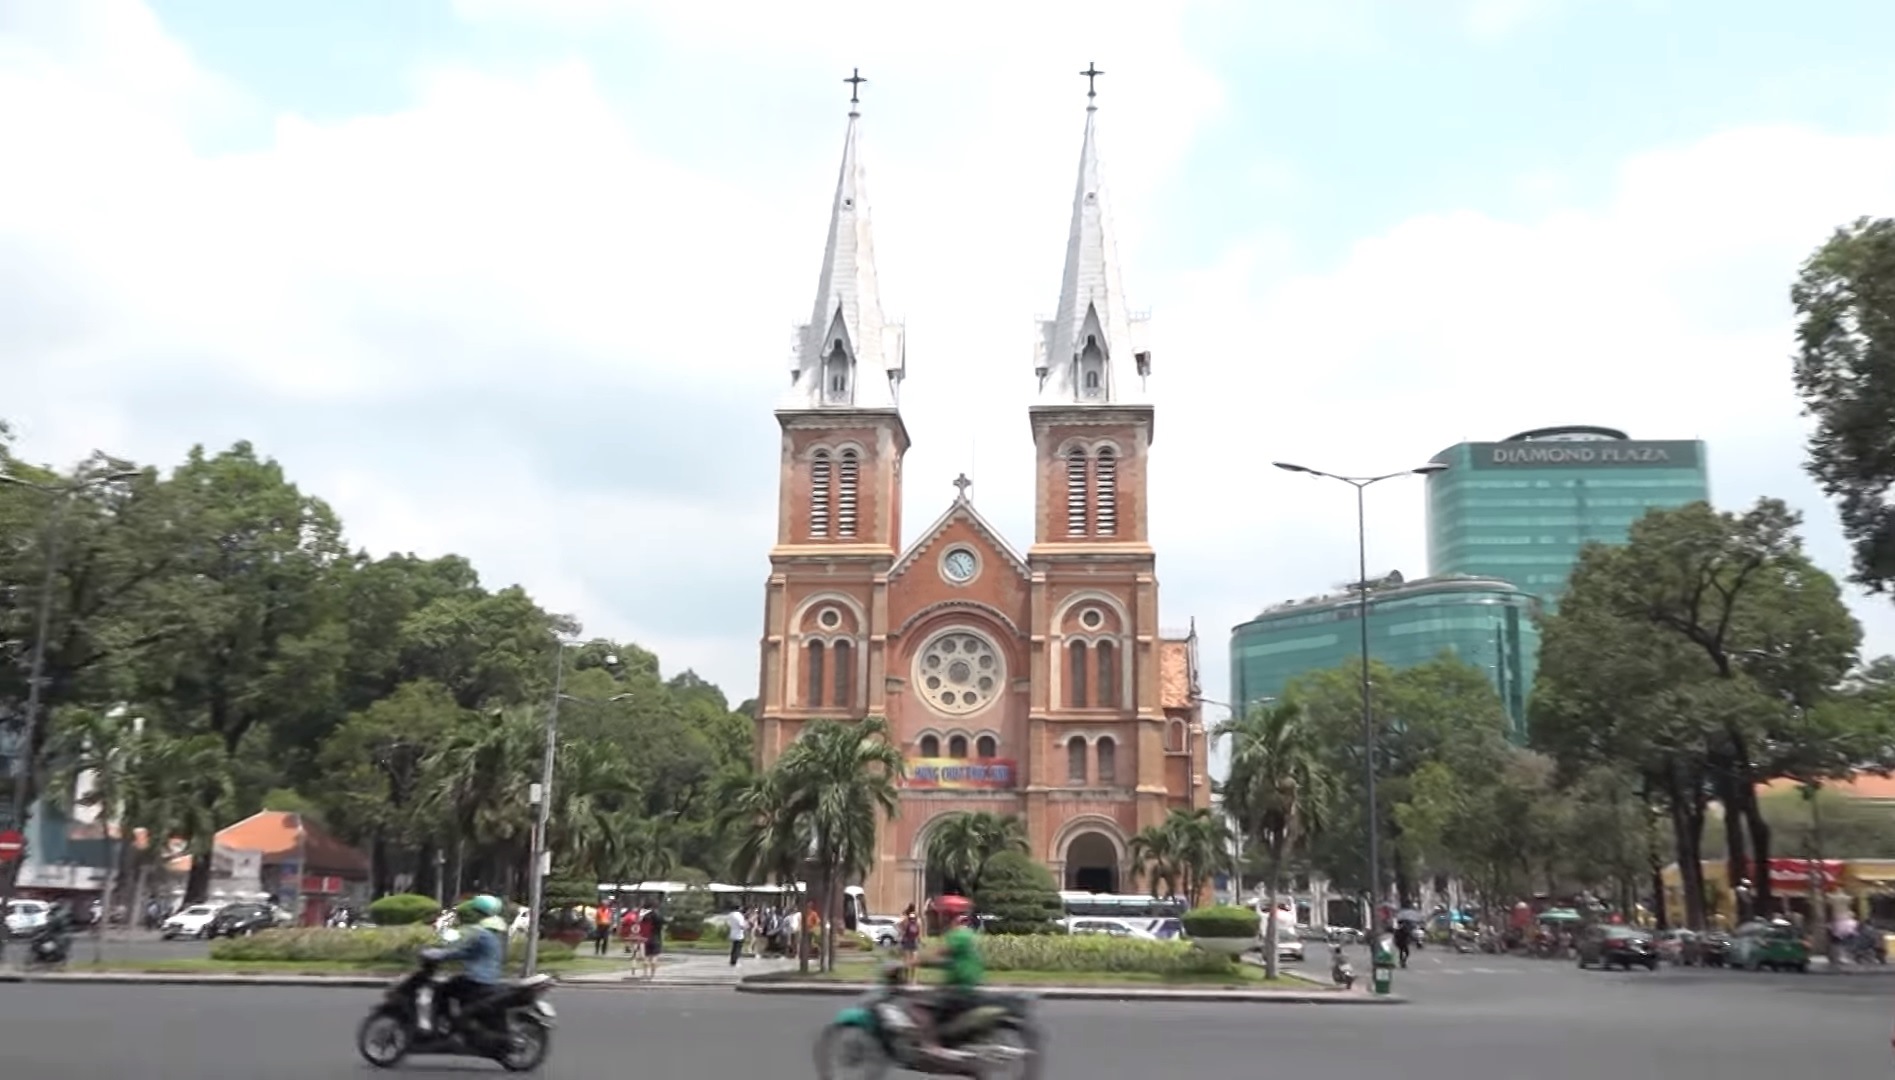 Thông tin Nhà thờ Chính tòa Đức Bà Sài Gòn ngừng đổ chuông trong thời gian Tết Nguyên đán được công bố tại Thánh lễ ngày 18/1